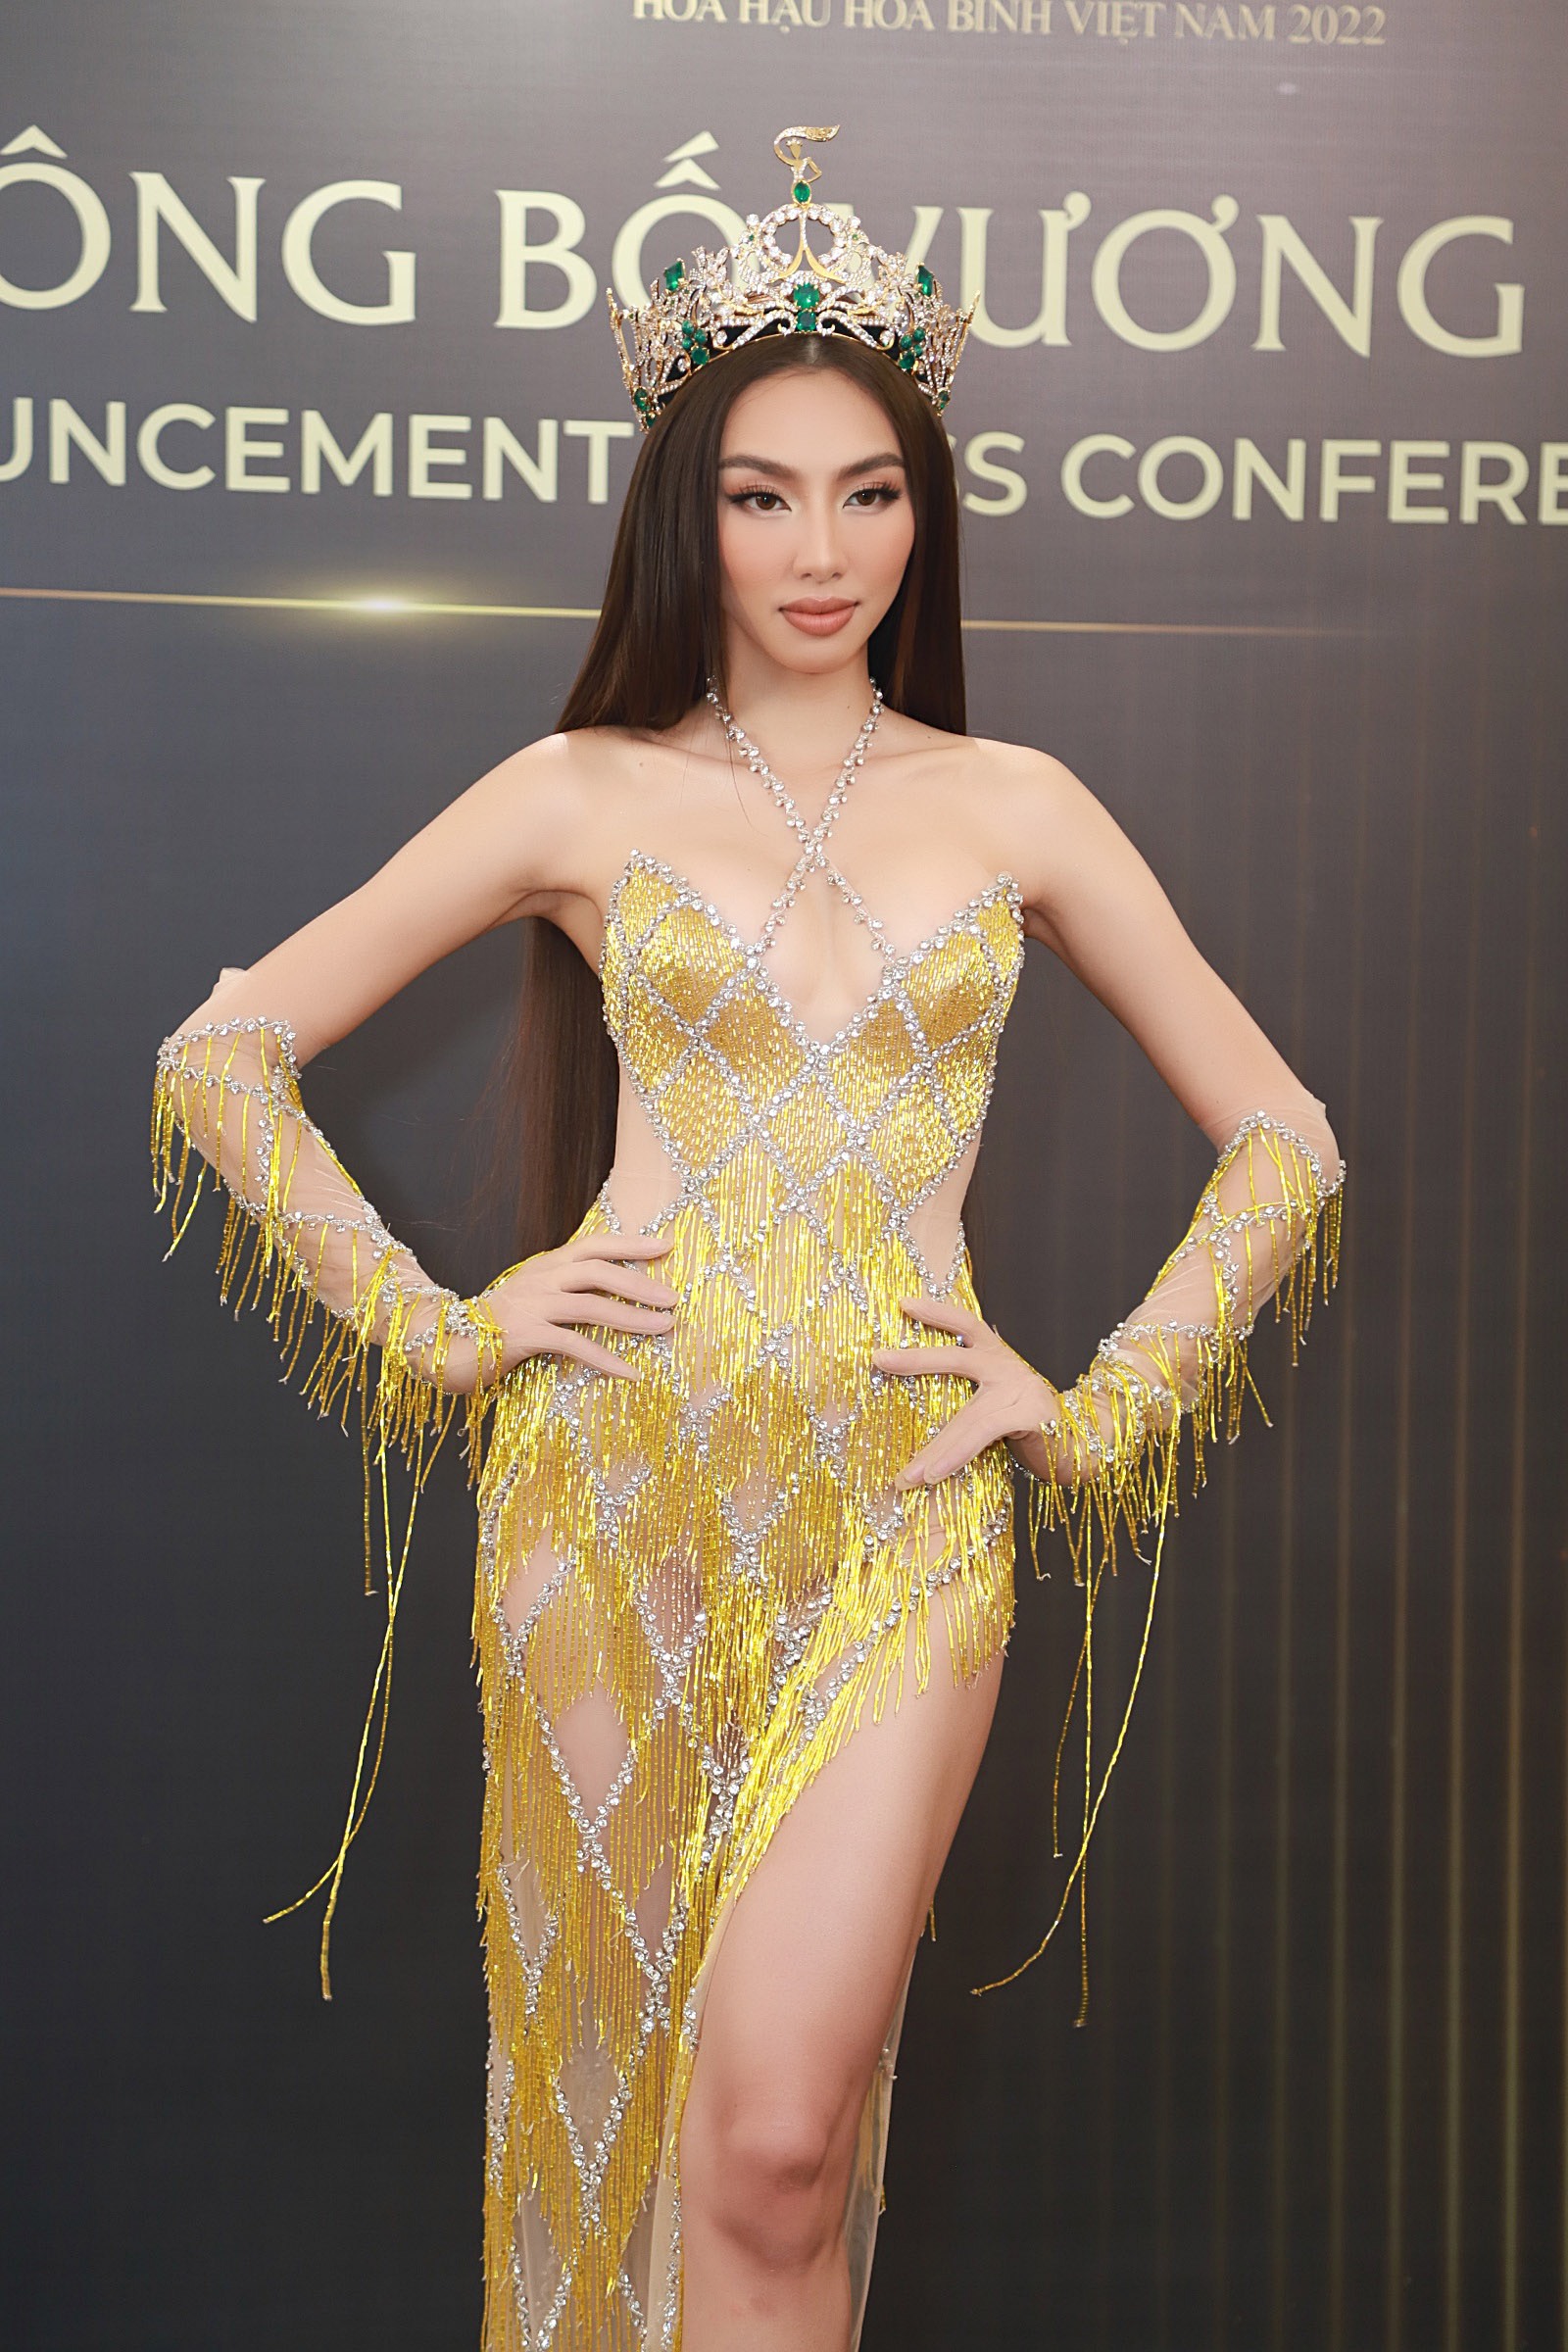 Hai Á hậu Thái Lan hội ngộ các Hoa hậu Việt trên thảm đỏ - Ảnh 1.